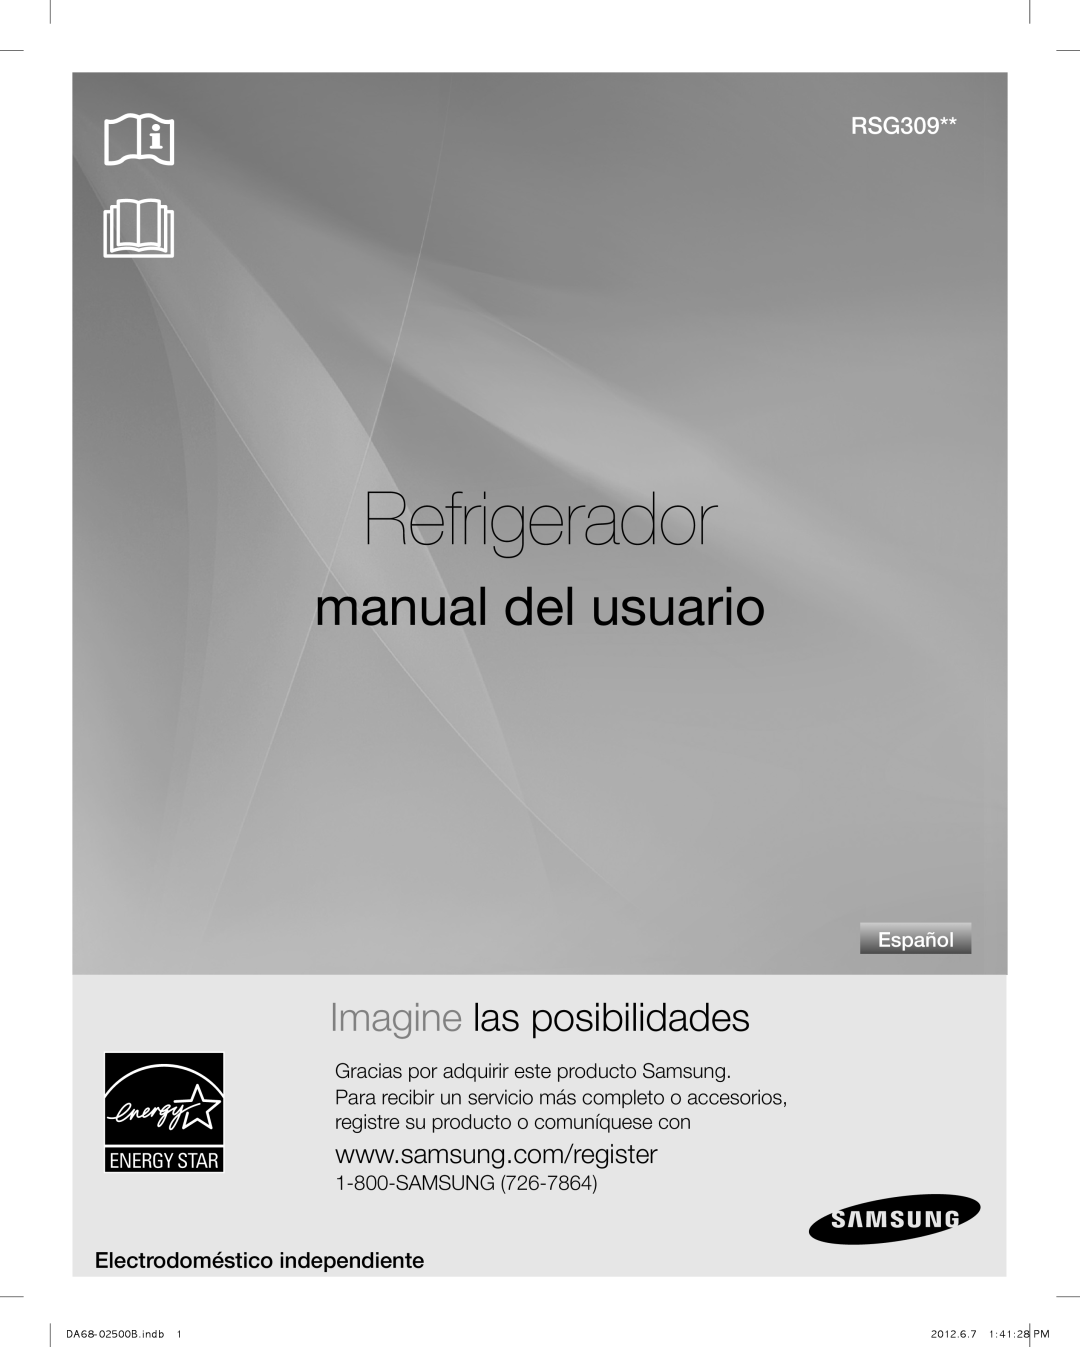 Samsung RSG309 Refrigerador, manual del usuario, Imagine las posibilidades, Electrodoméstico independiente, Español 